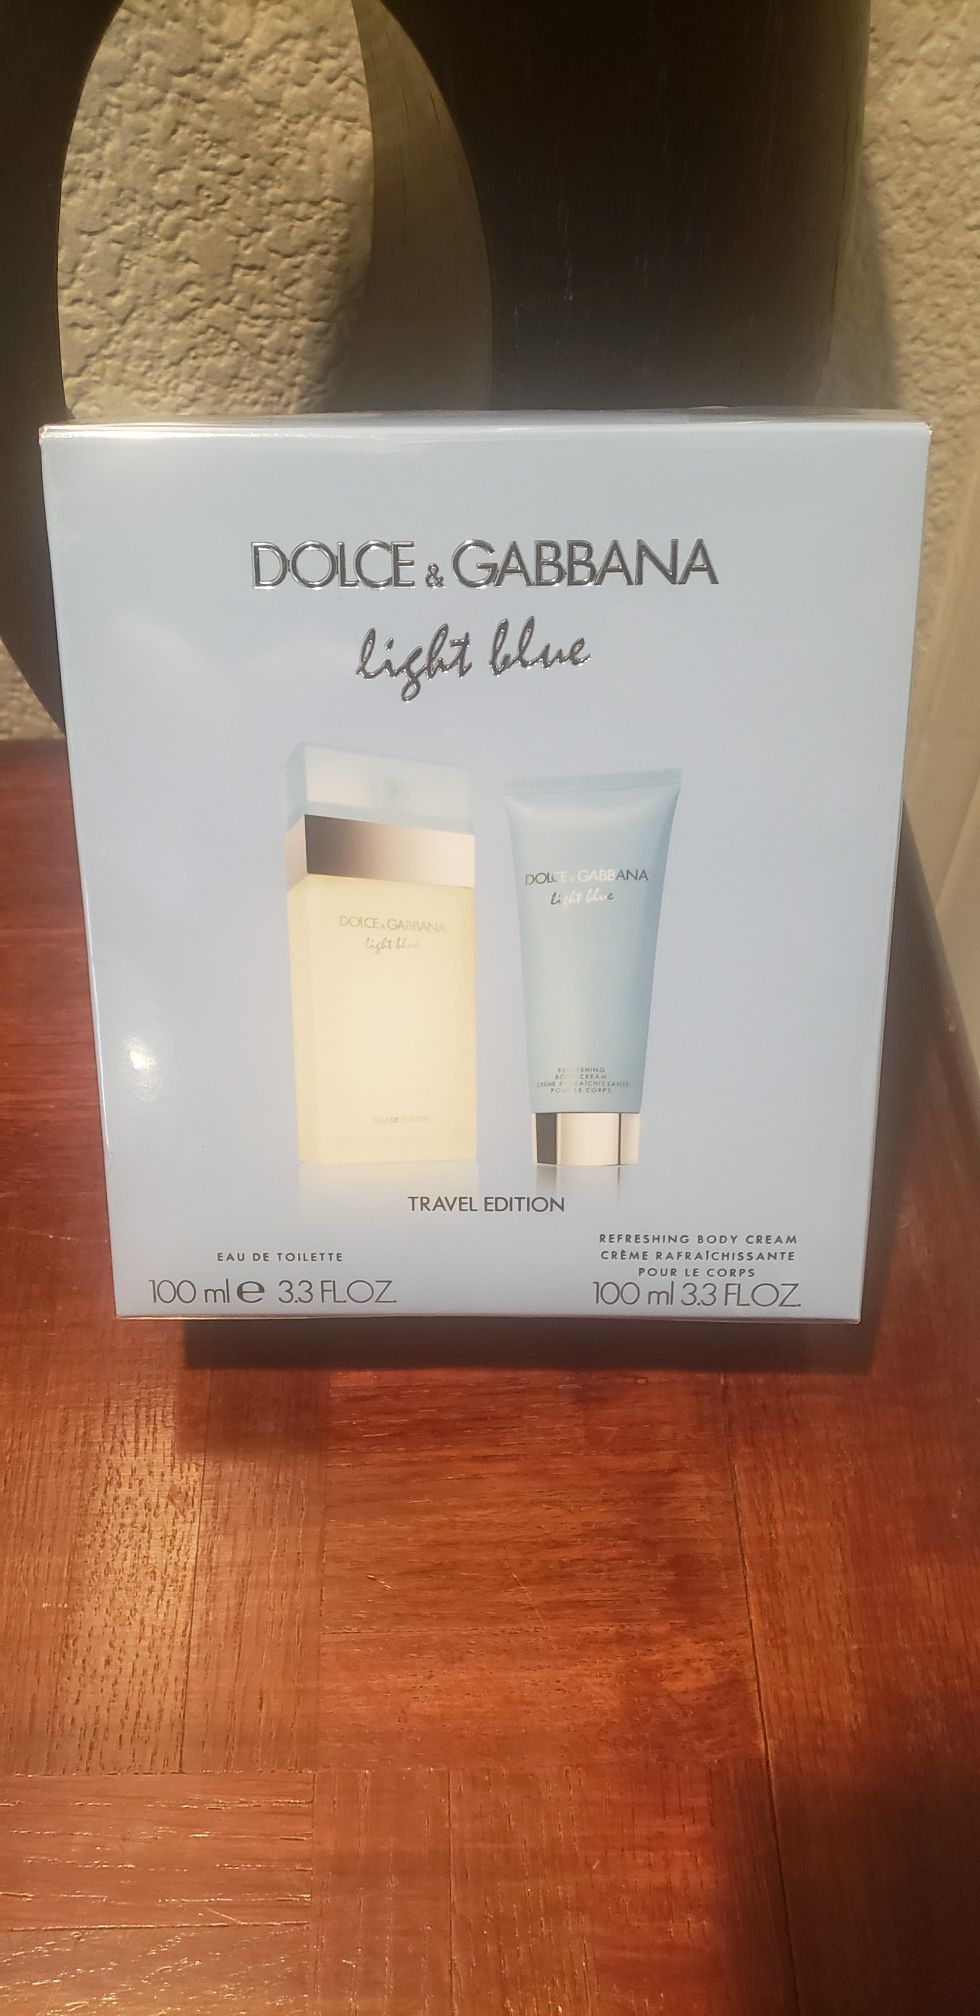 Dolce & Gabbana light blue